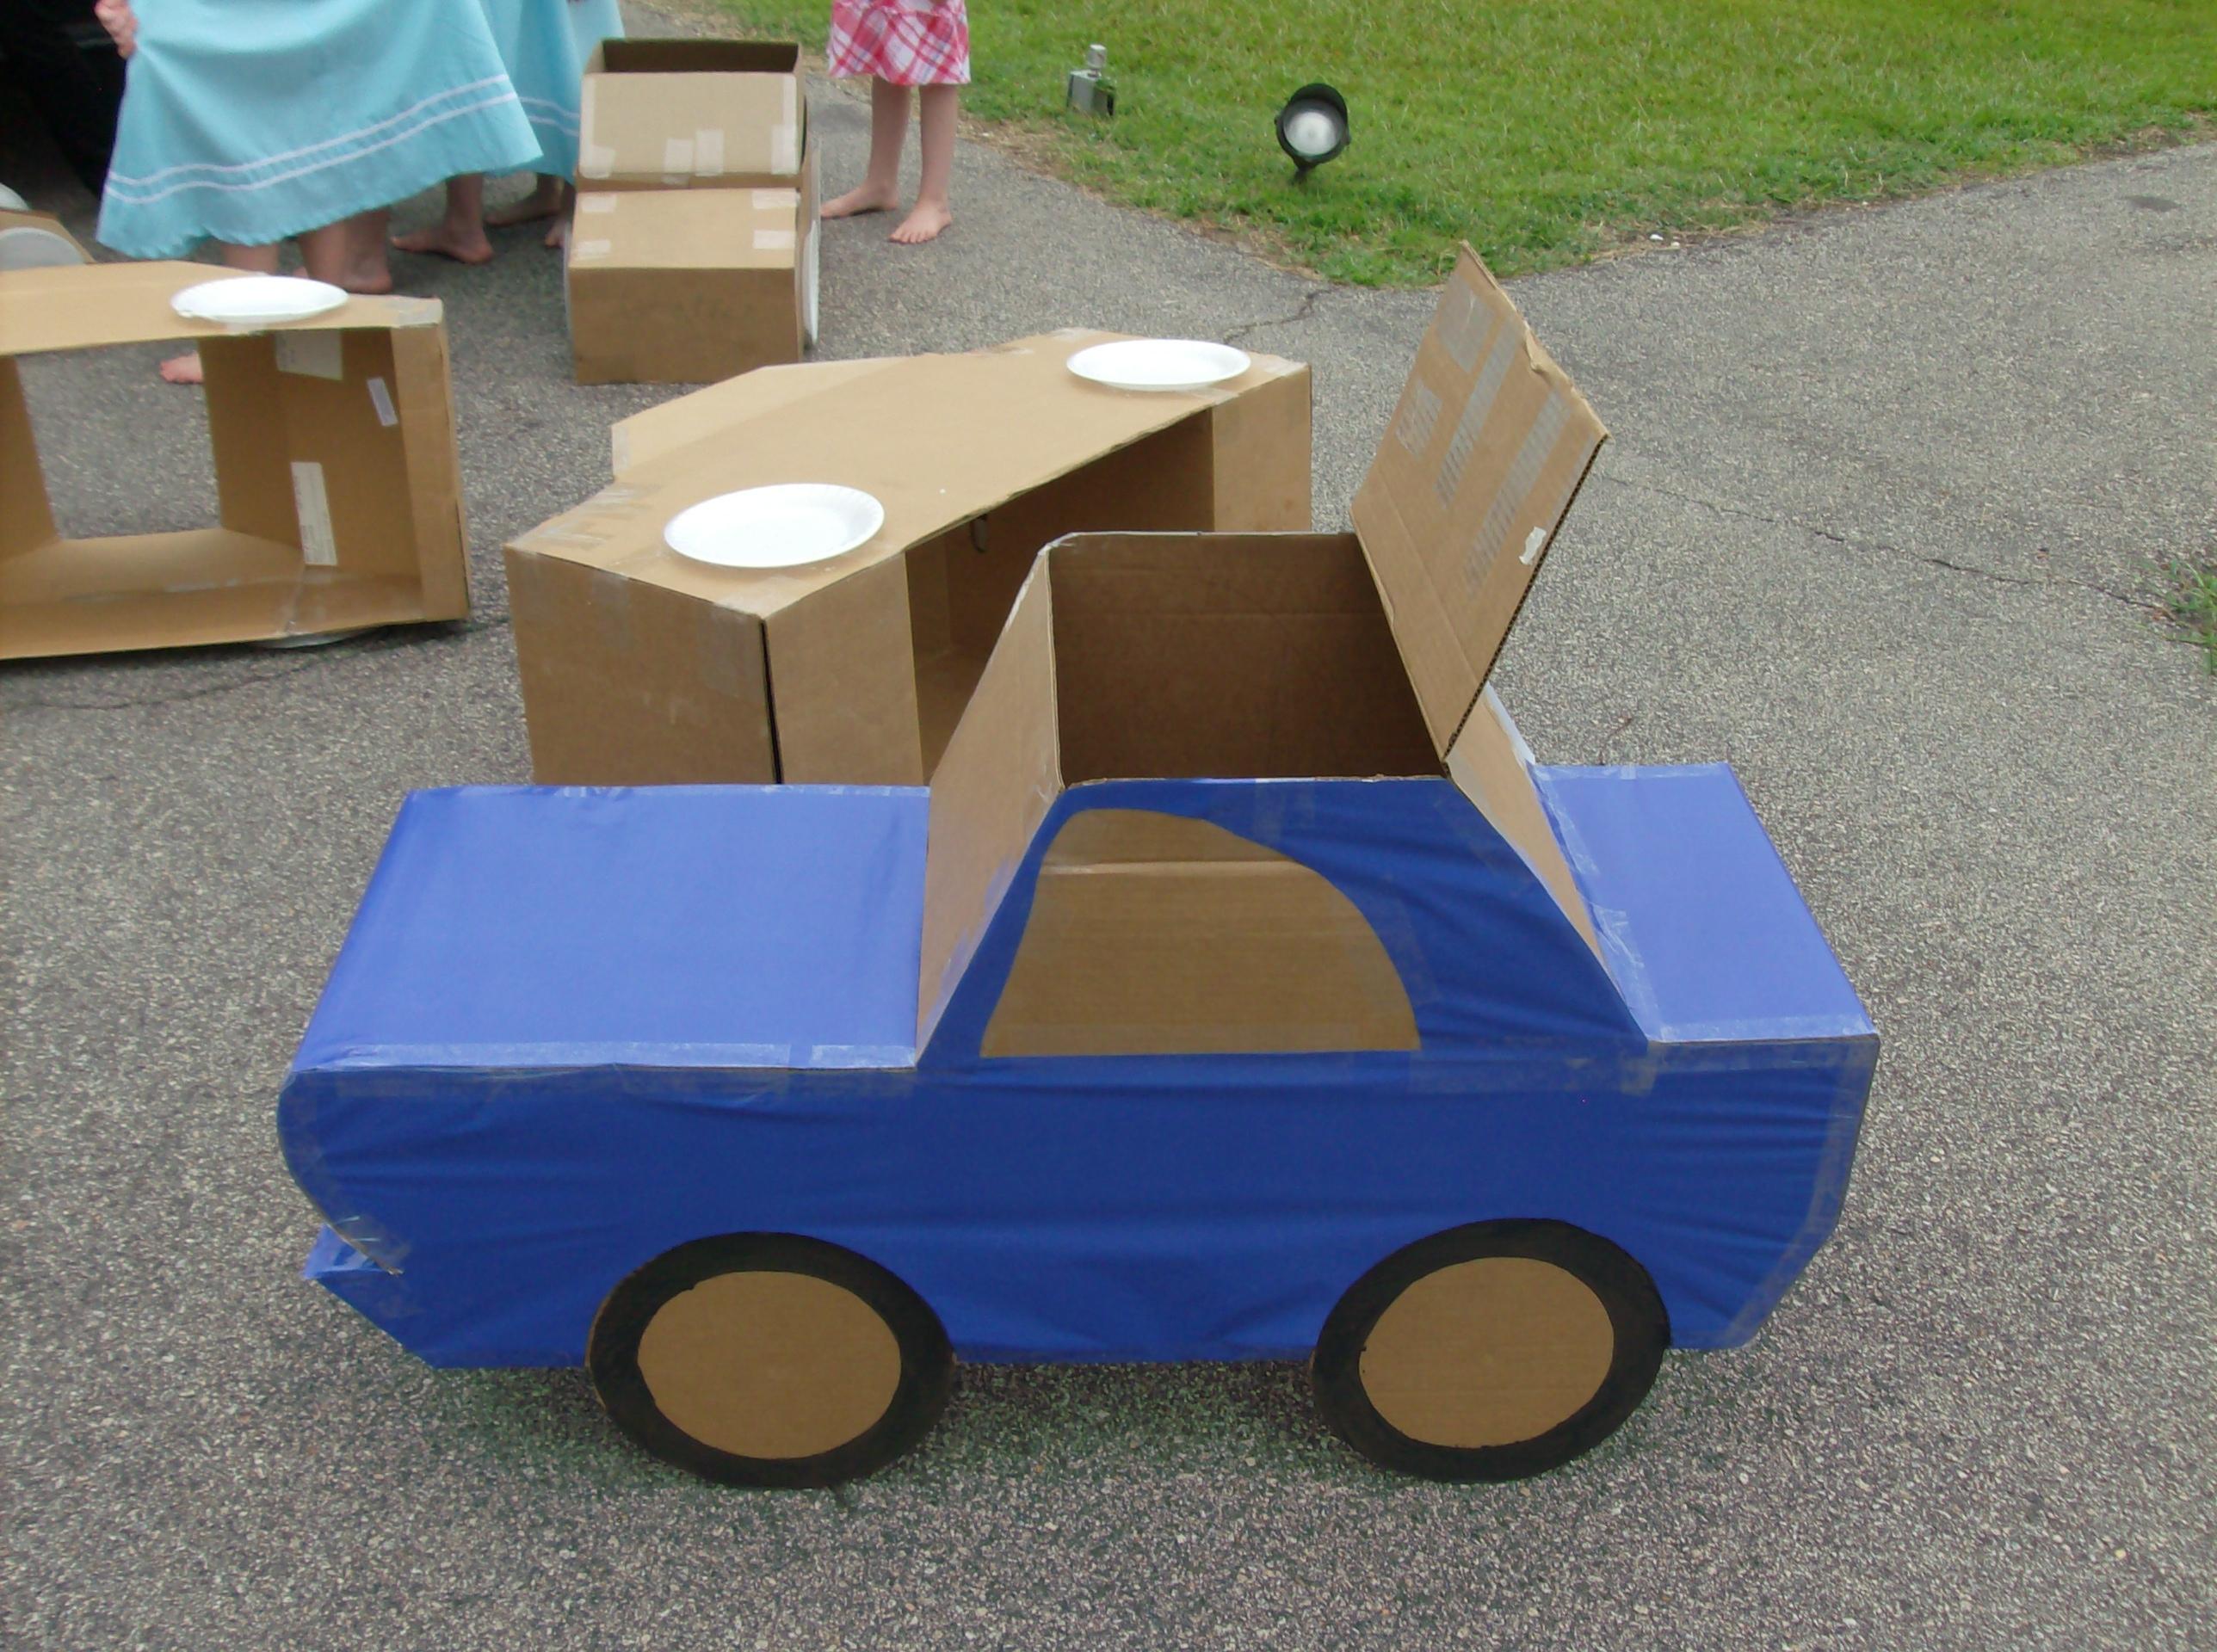 cardboard box play